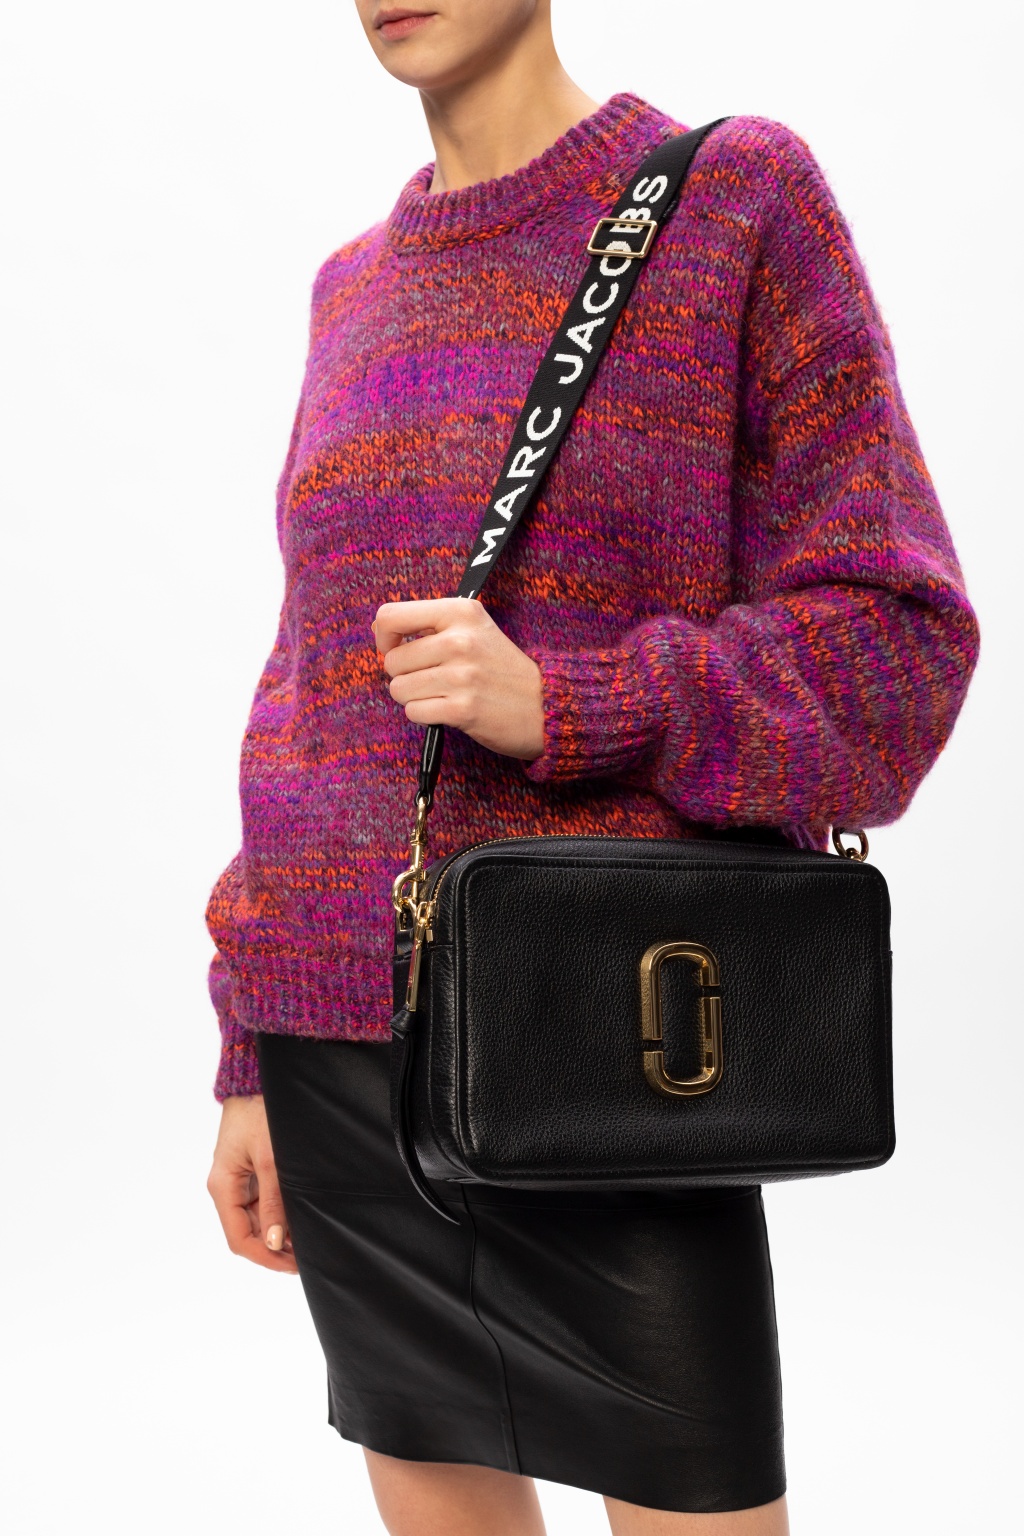 Marc Jacobs Bag strap, IetpShops, Women's Bags